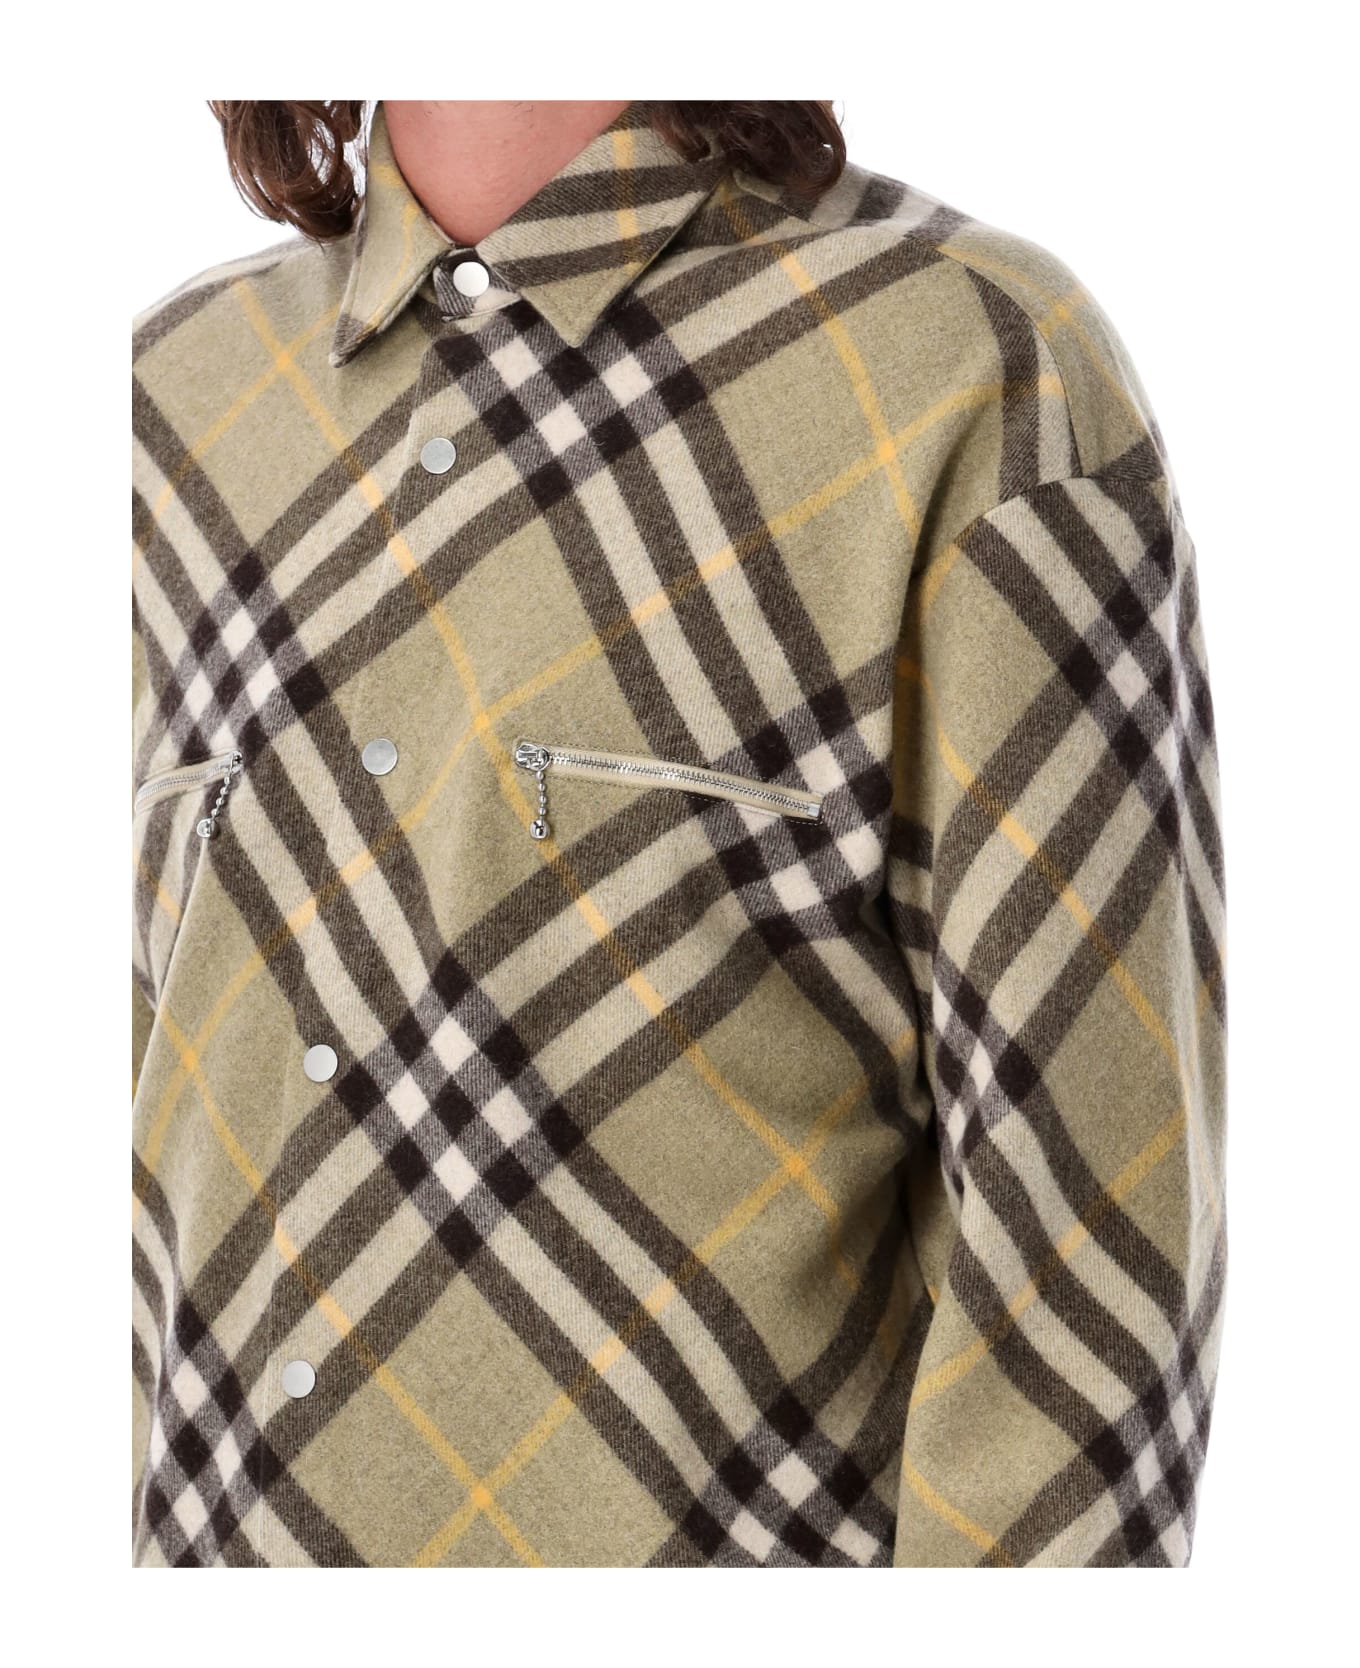 Burberry London Check Wool Blend Overshirt - HUNTER CHECK